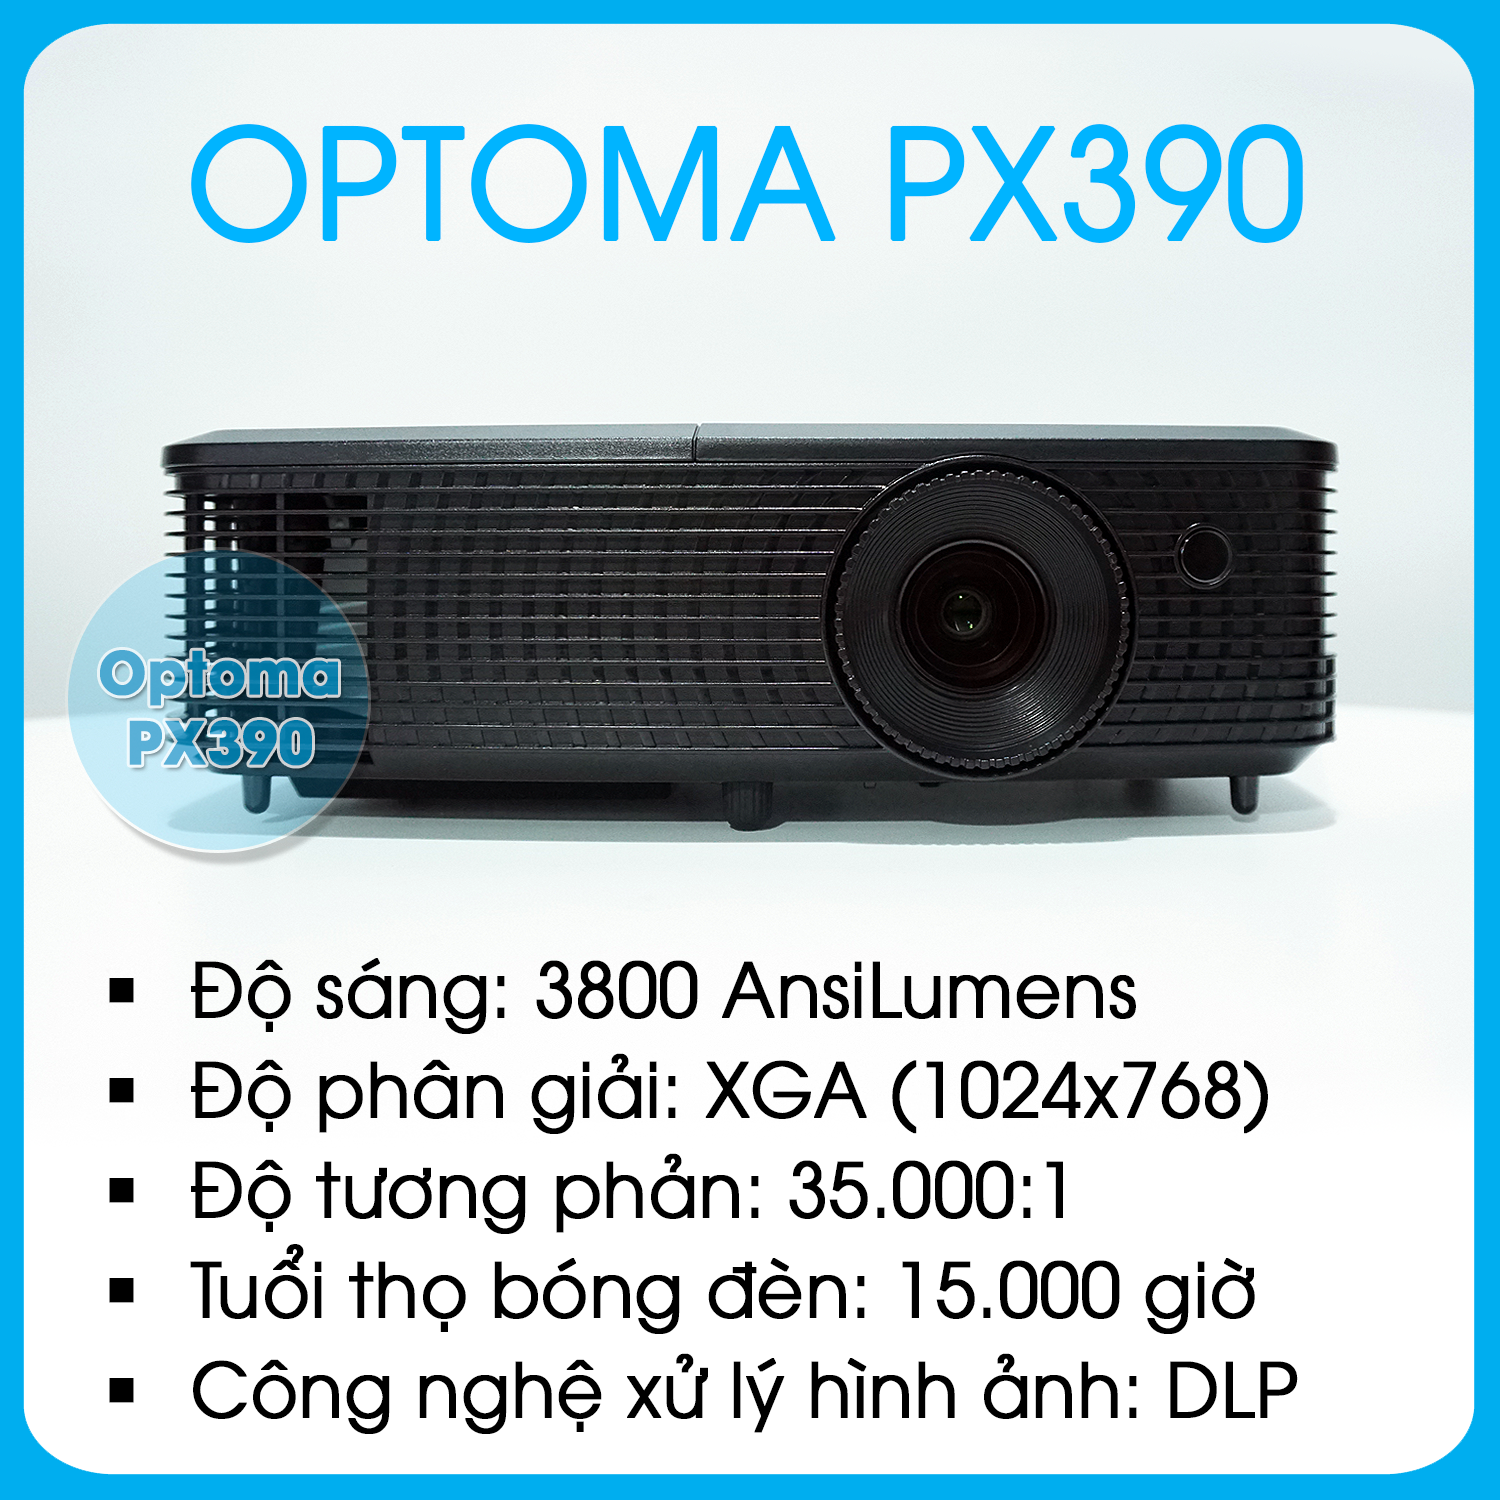 OPTOMA PX390